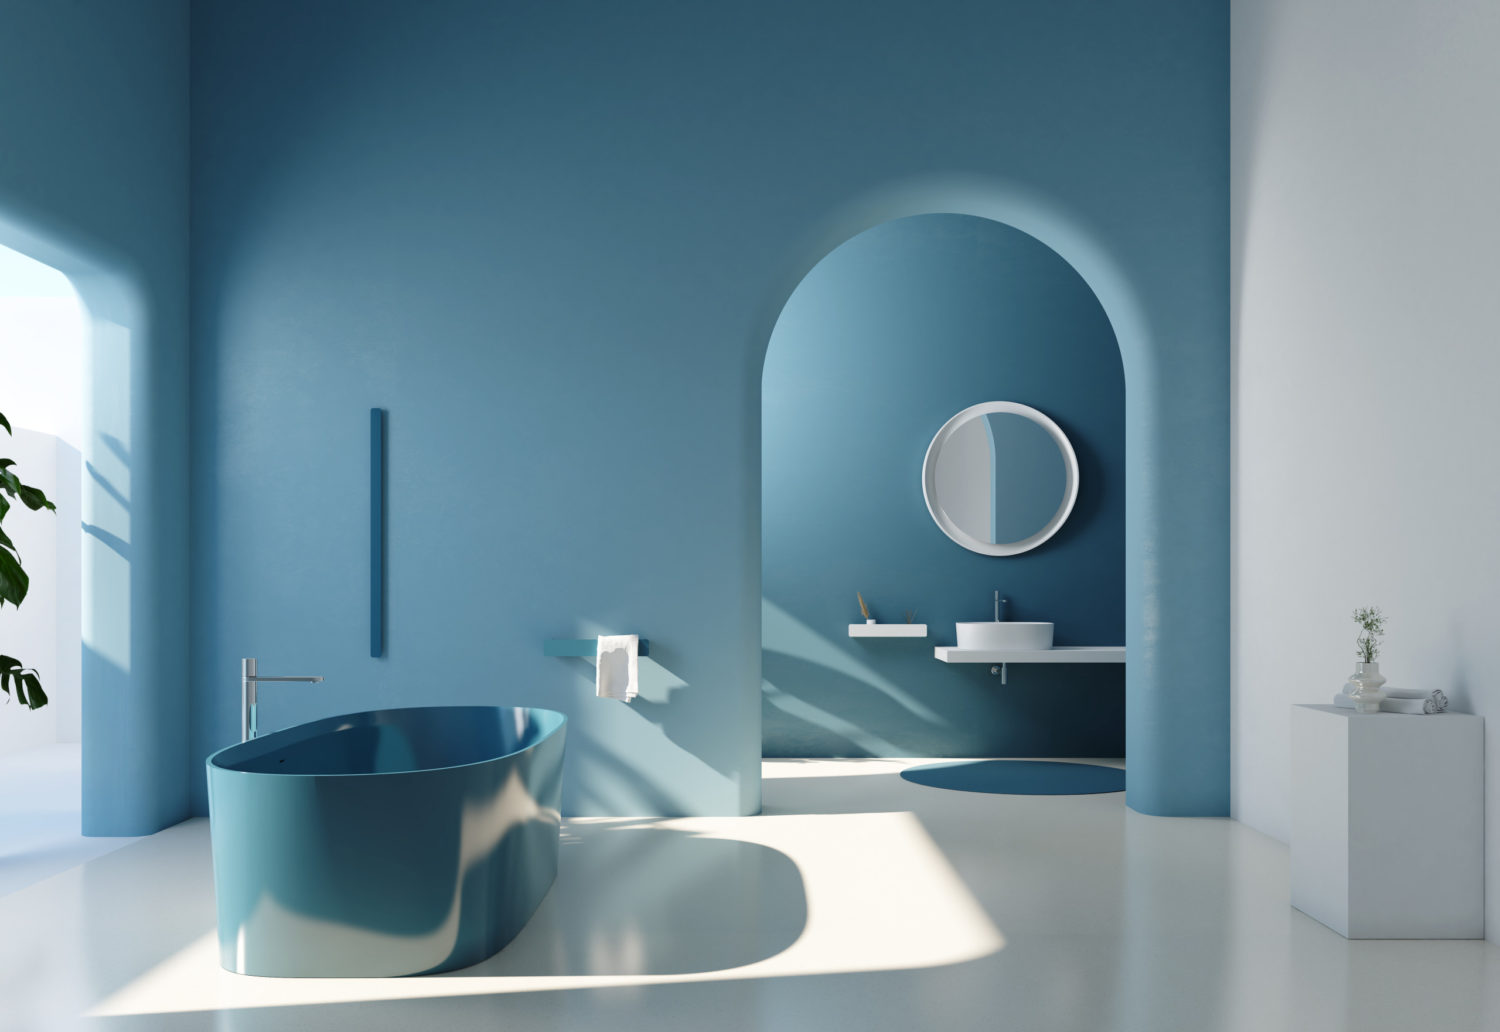 2023 Bathroom Design Trends